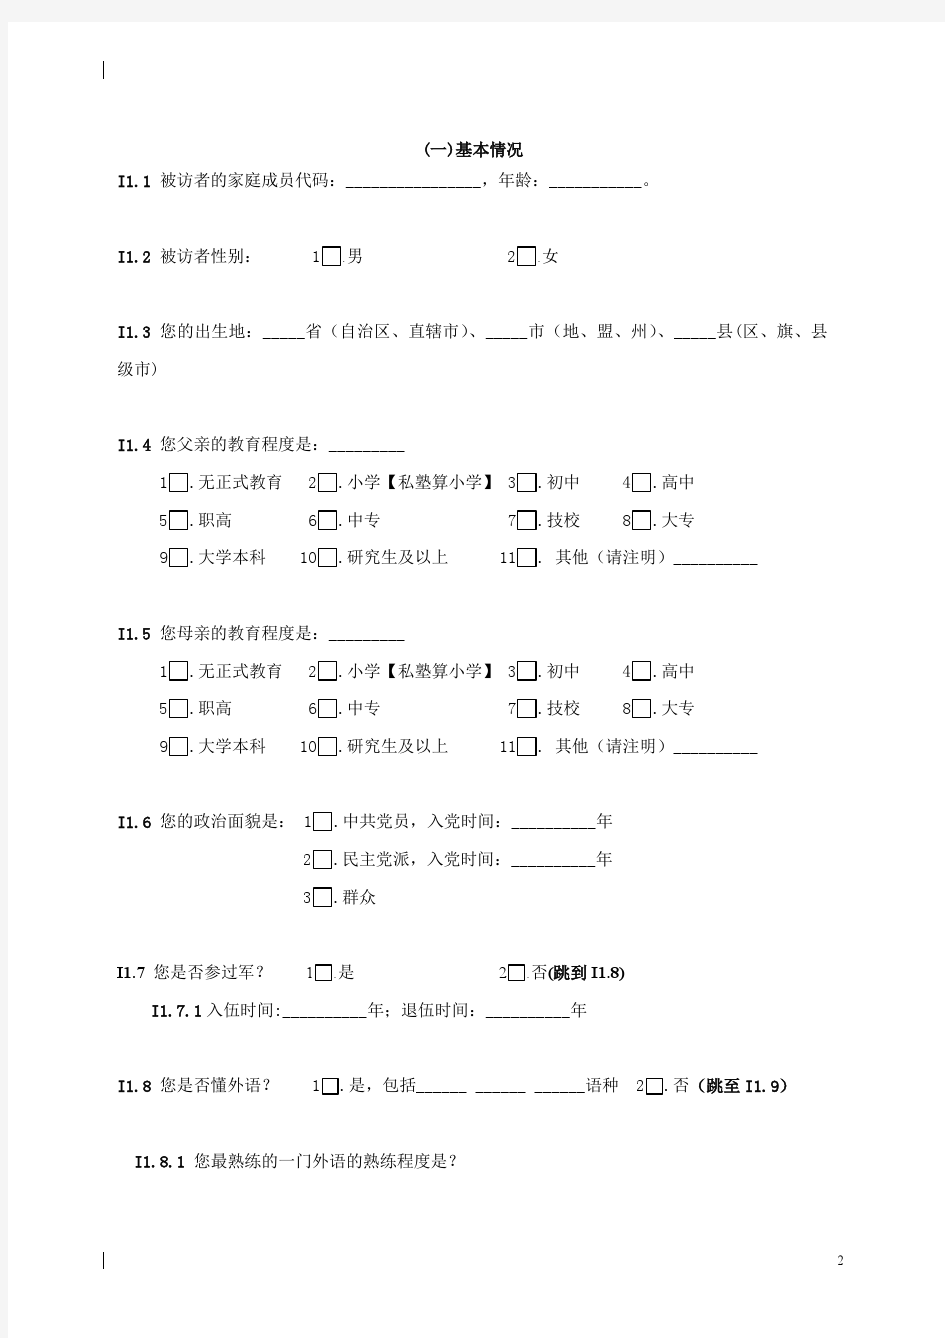 中山大学中国劳动力调查问卷CLDS2012个体问卷